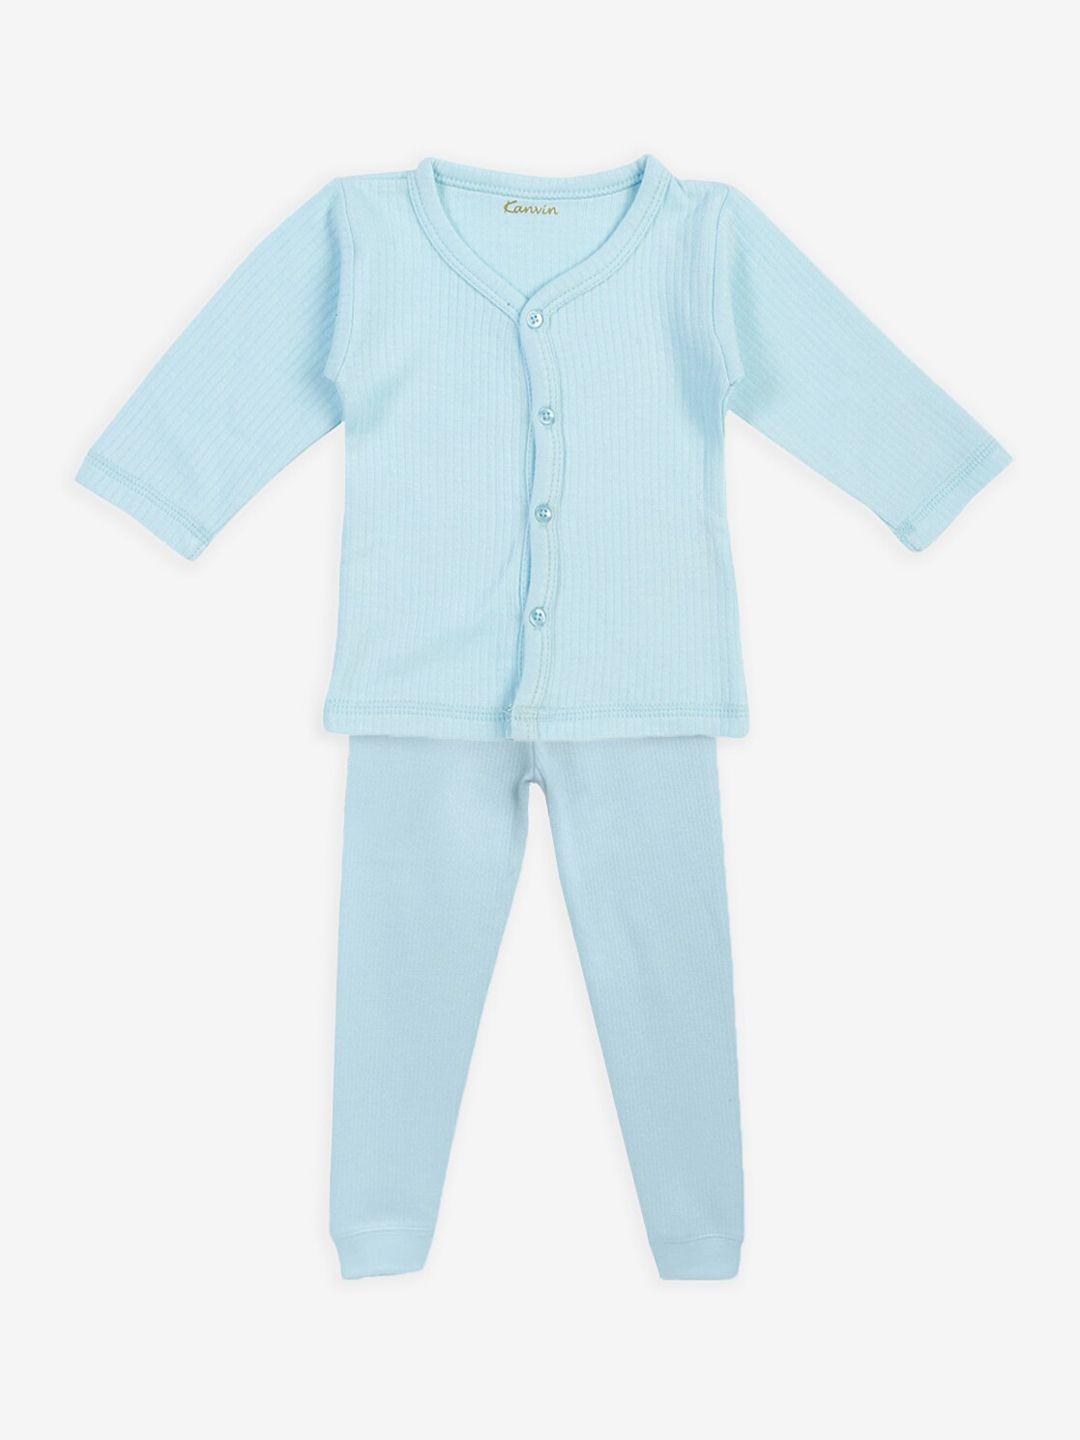 kanvin infant boys blue solid thermal set